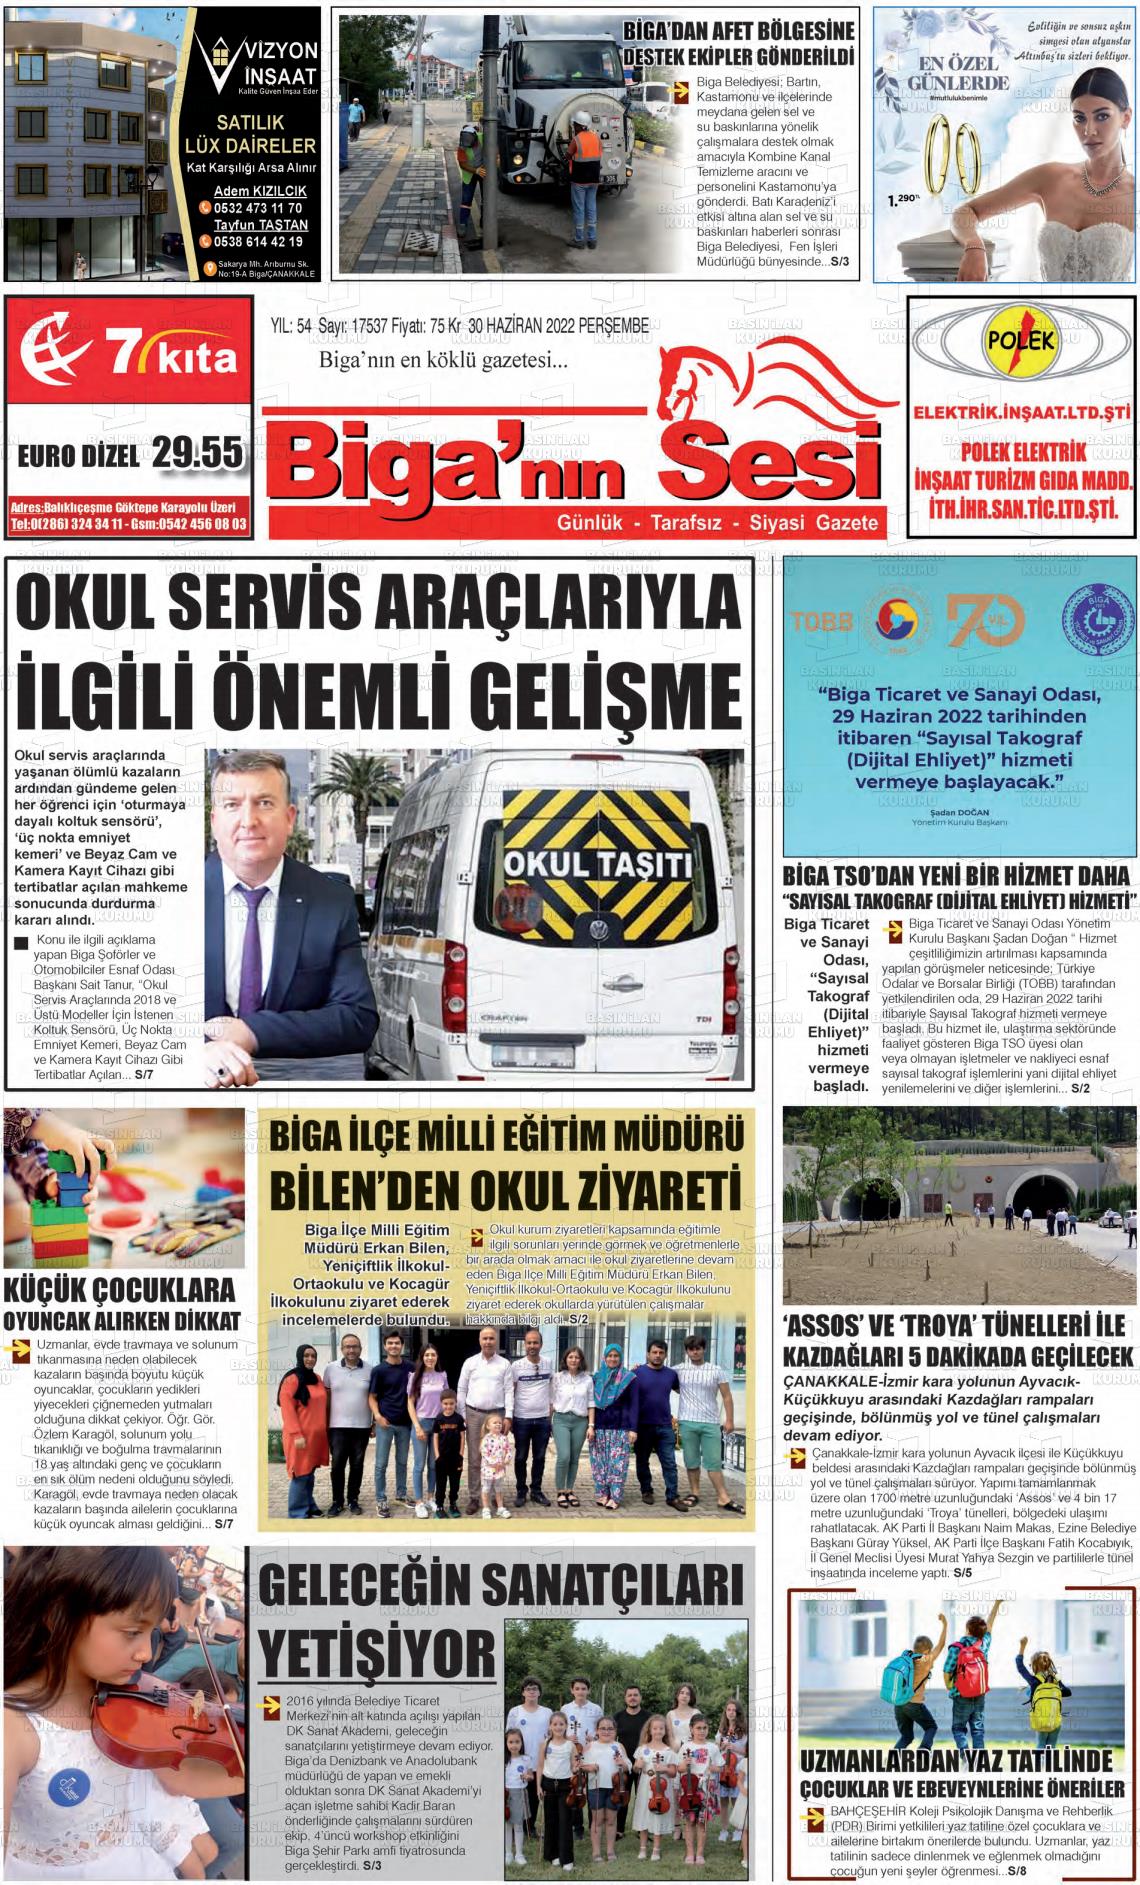 02 Temmuz 2022 Biga'nın Sesi Gazete Manşeti